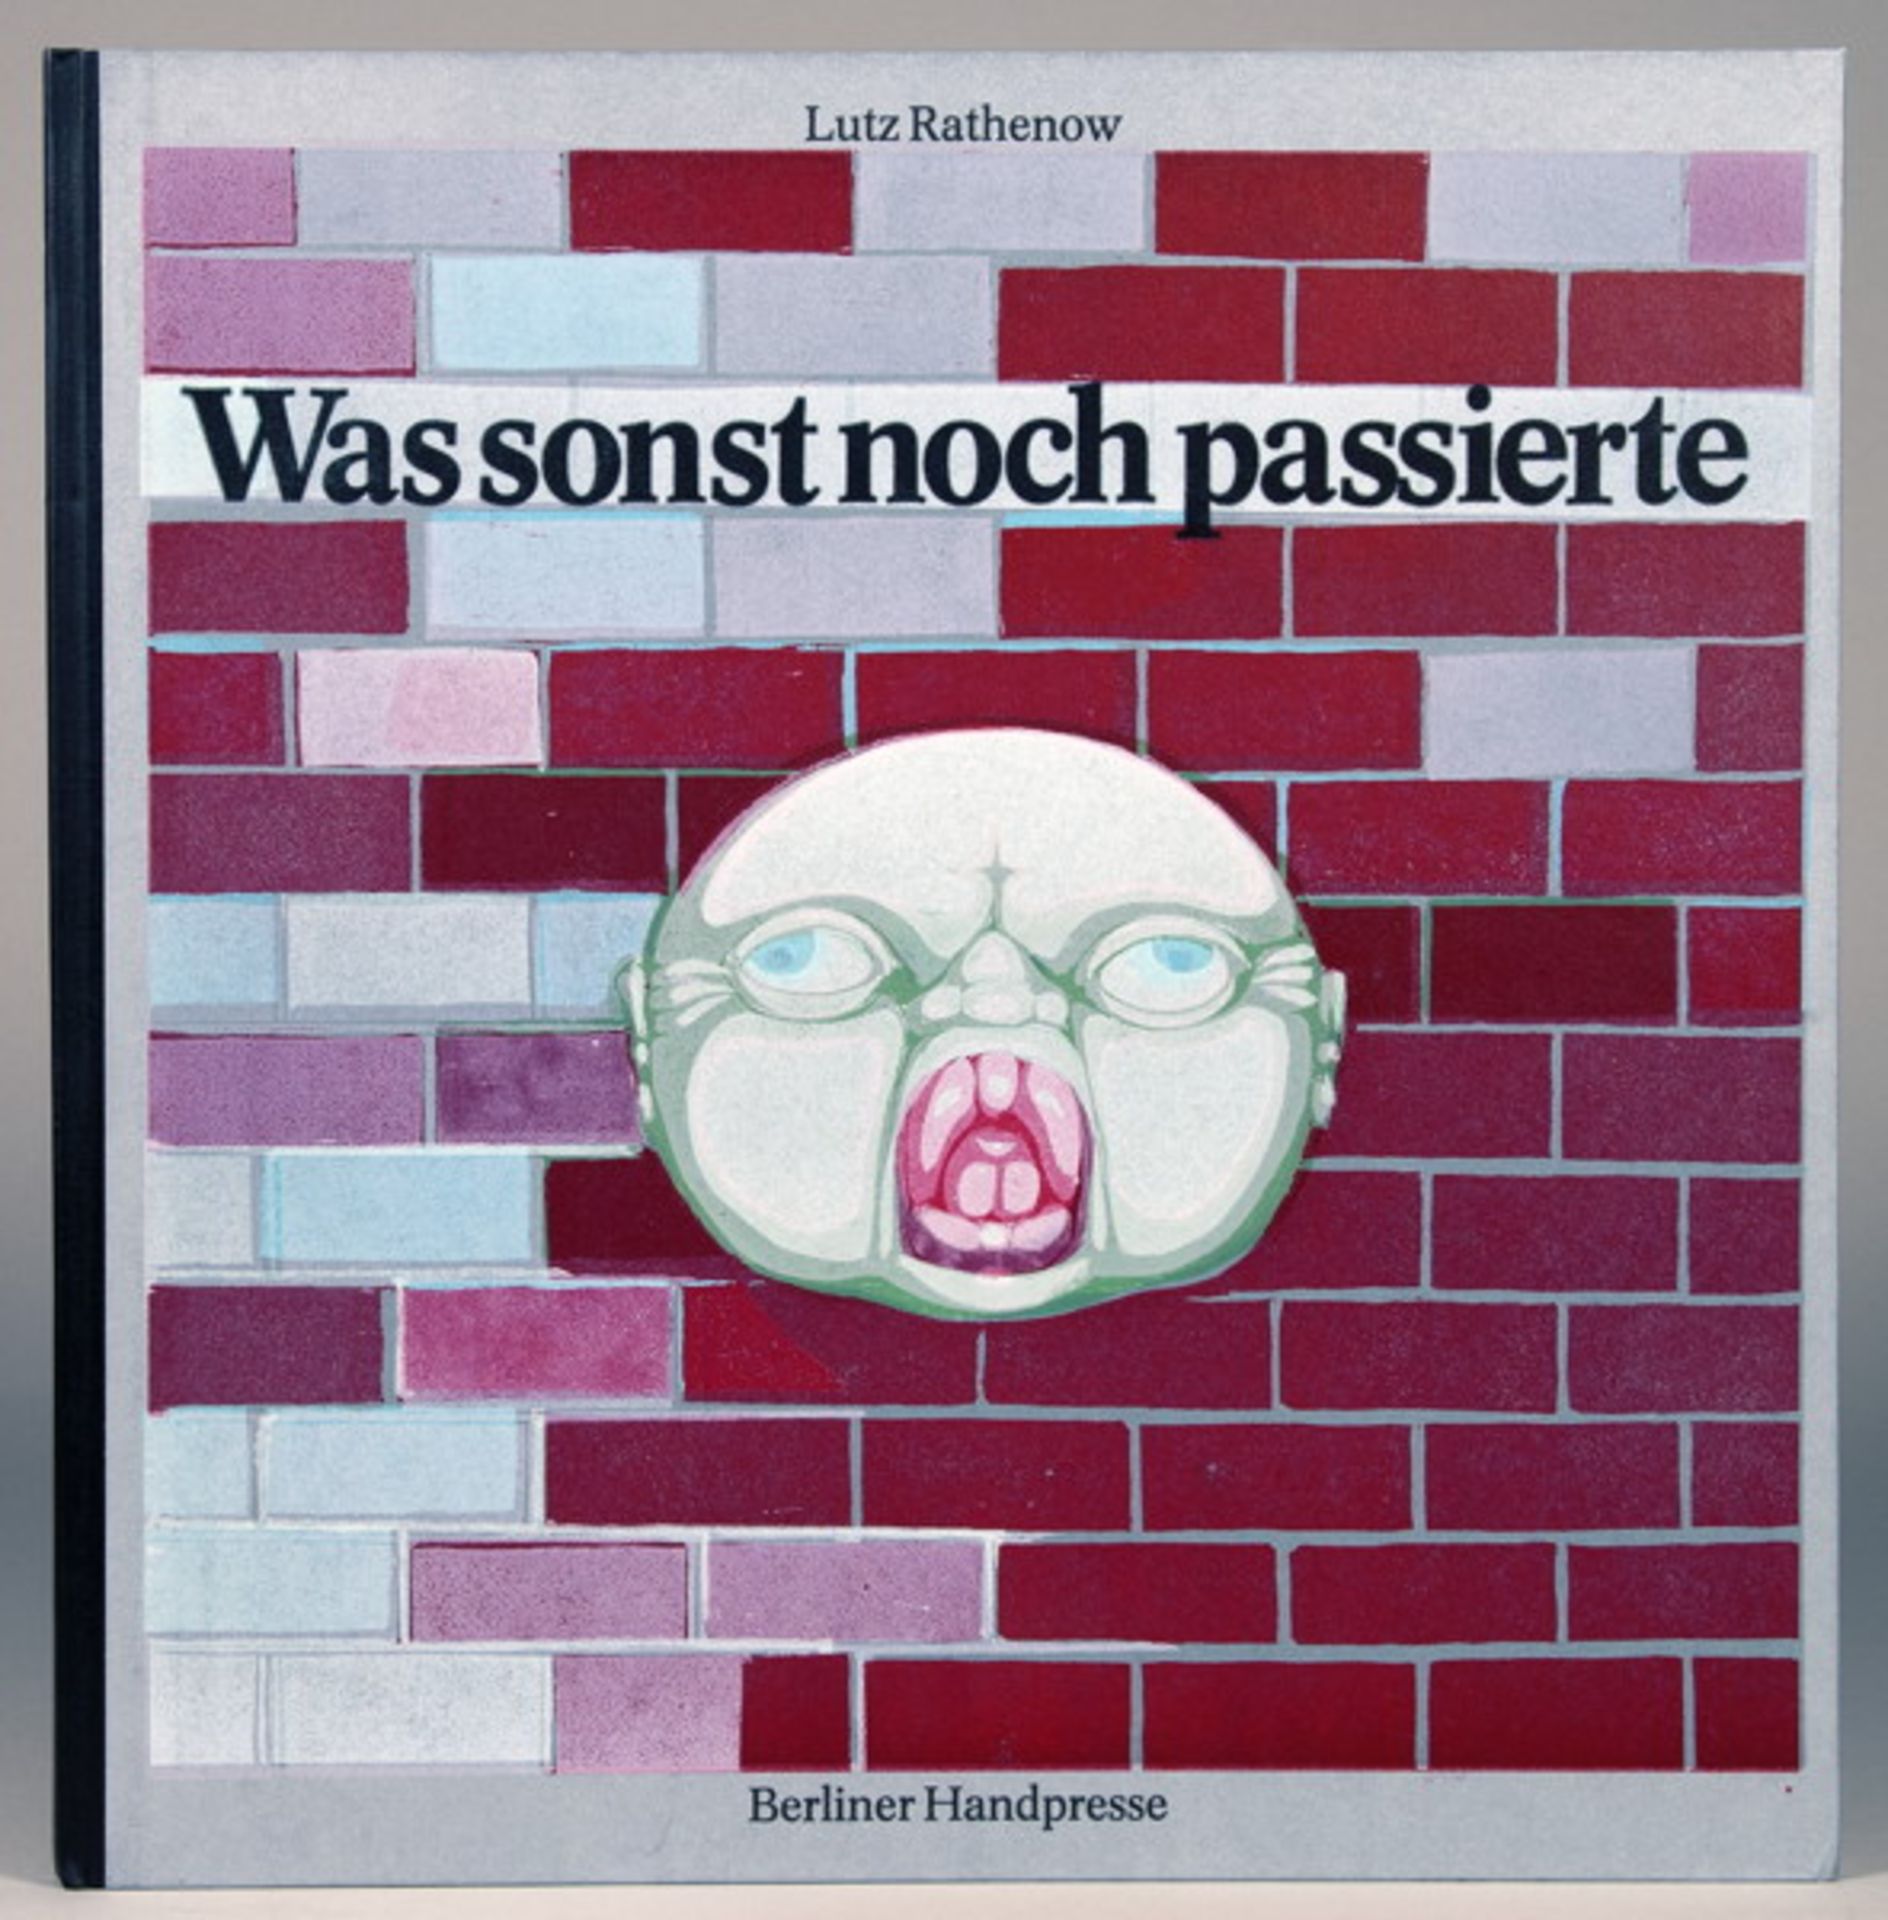 Berliner Handpresse - Acht Drucke. Berlin 1974–1987. Mit blattgroßen Farblinolschnitten von Wolfgang